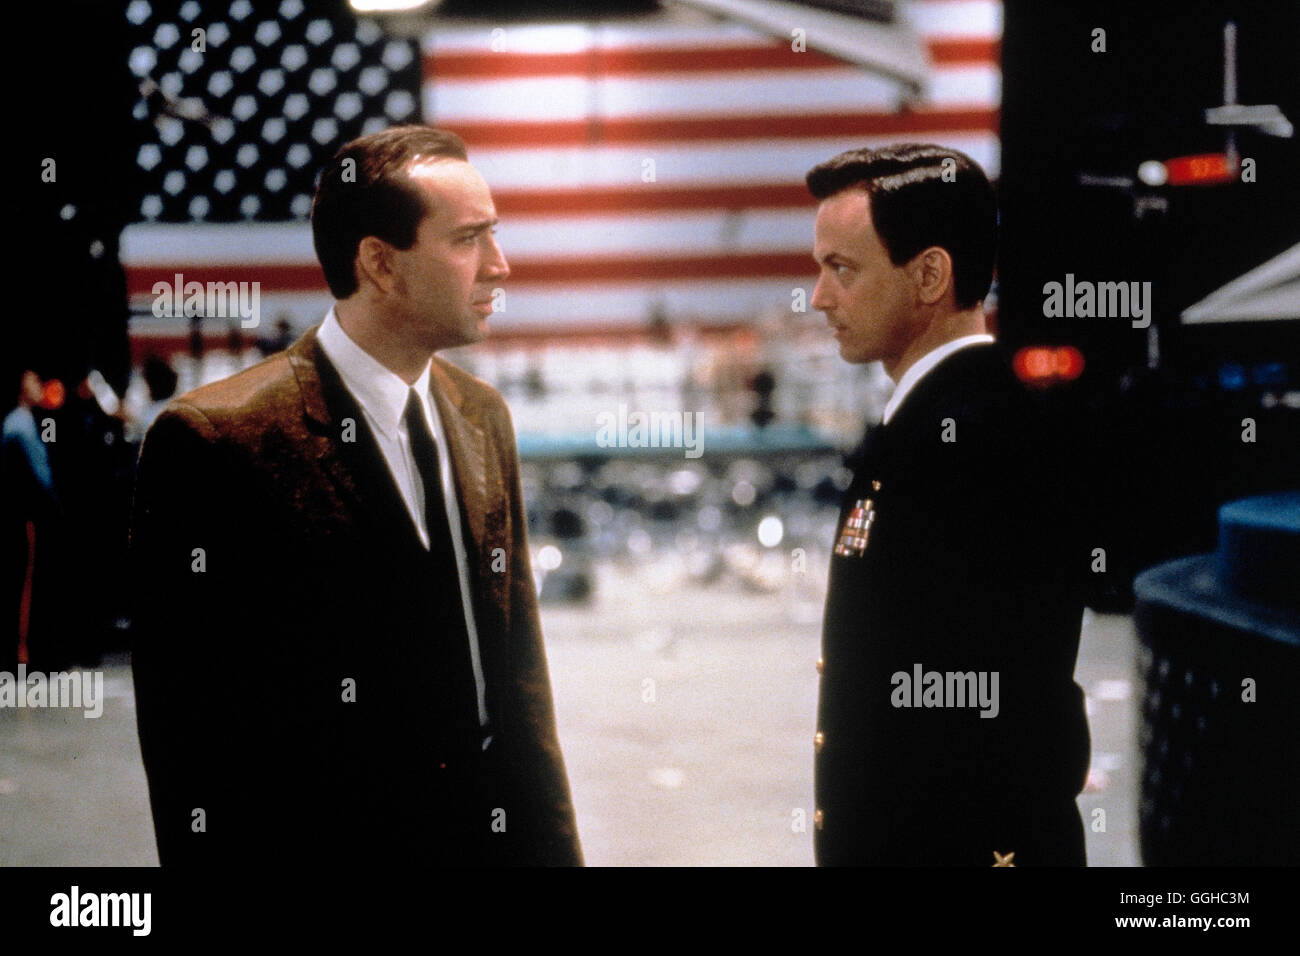 SPIEL AUF ZEIT / Snake Eyes USA 1998 / Brian De Palma Rick Santoro (NICOLAS CAGE) und Kevin Dunne (GARY SUNISE). Regie: Brian De Palma aka. Snake Eyes Stock Photo